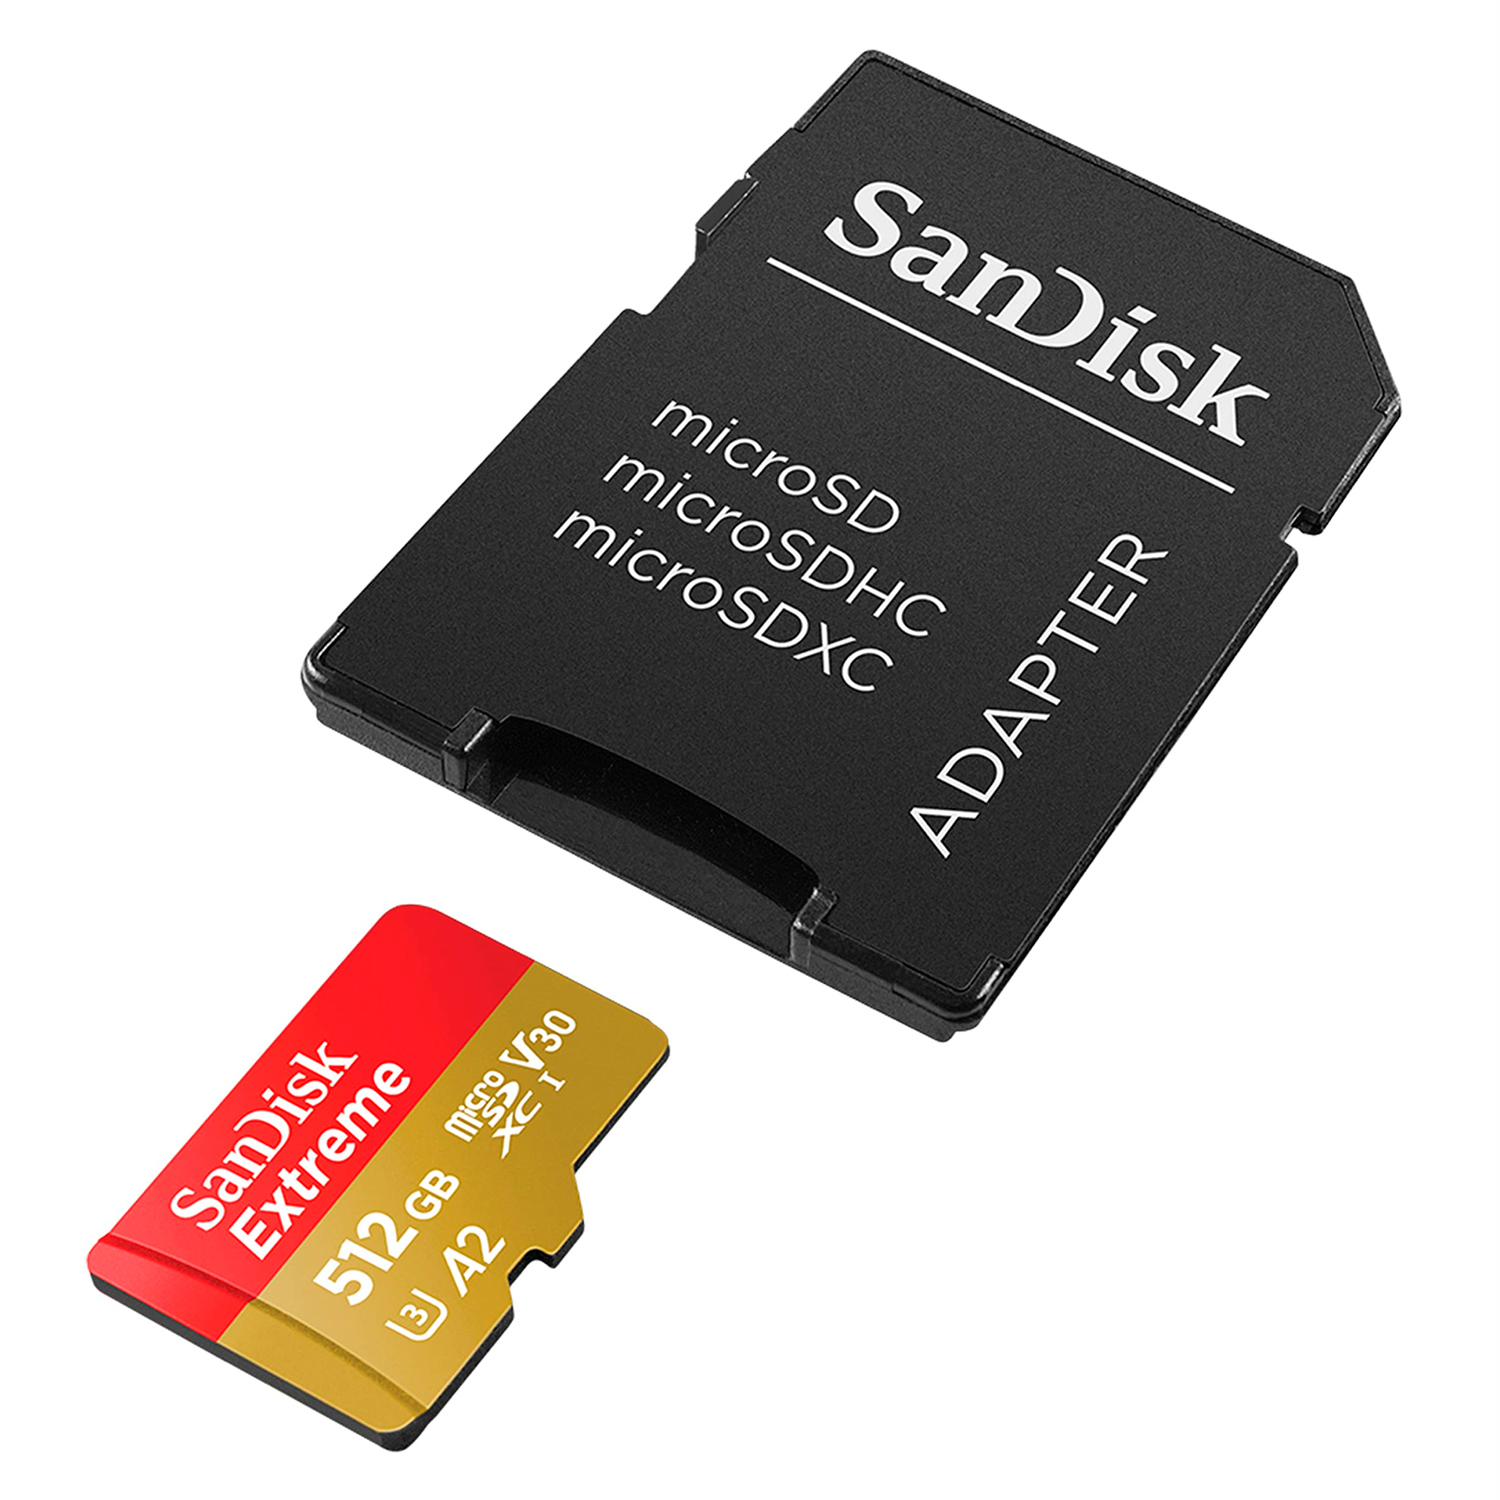 Cartão de Memória Micro SD Sandisk Extreme 512GB 190MBS - SDSQXAV-512G-GN6MA
